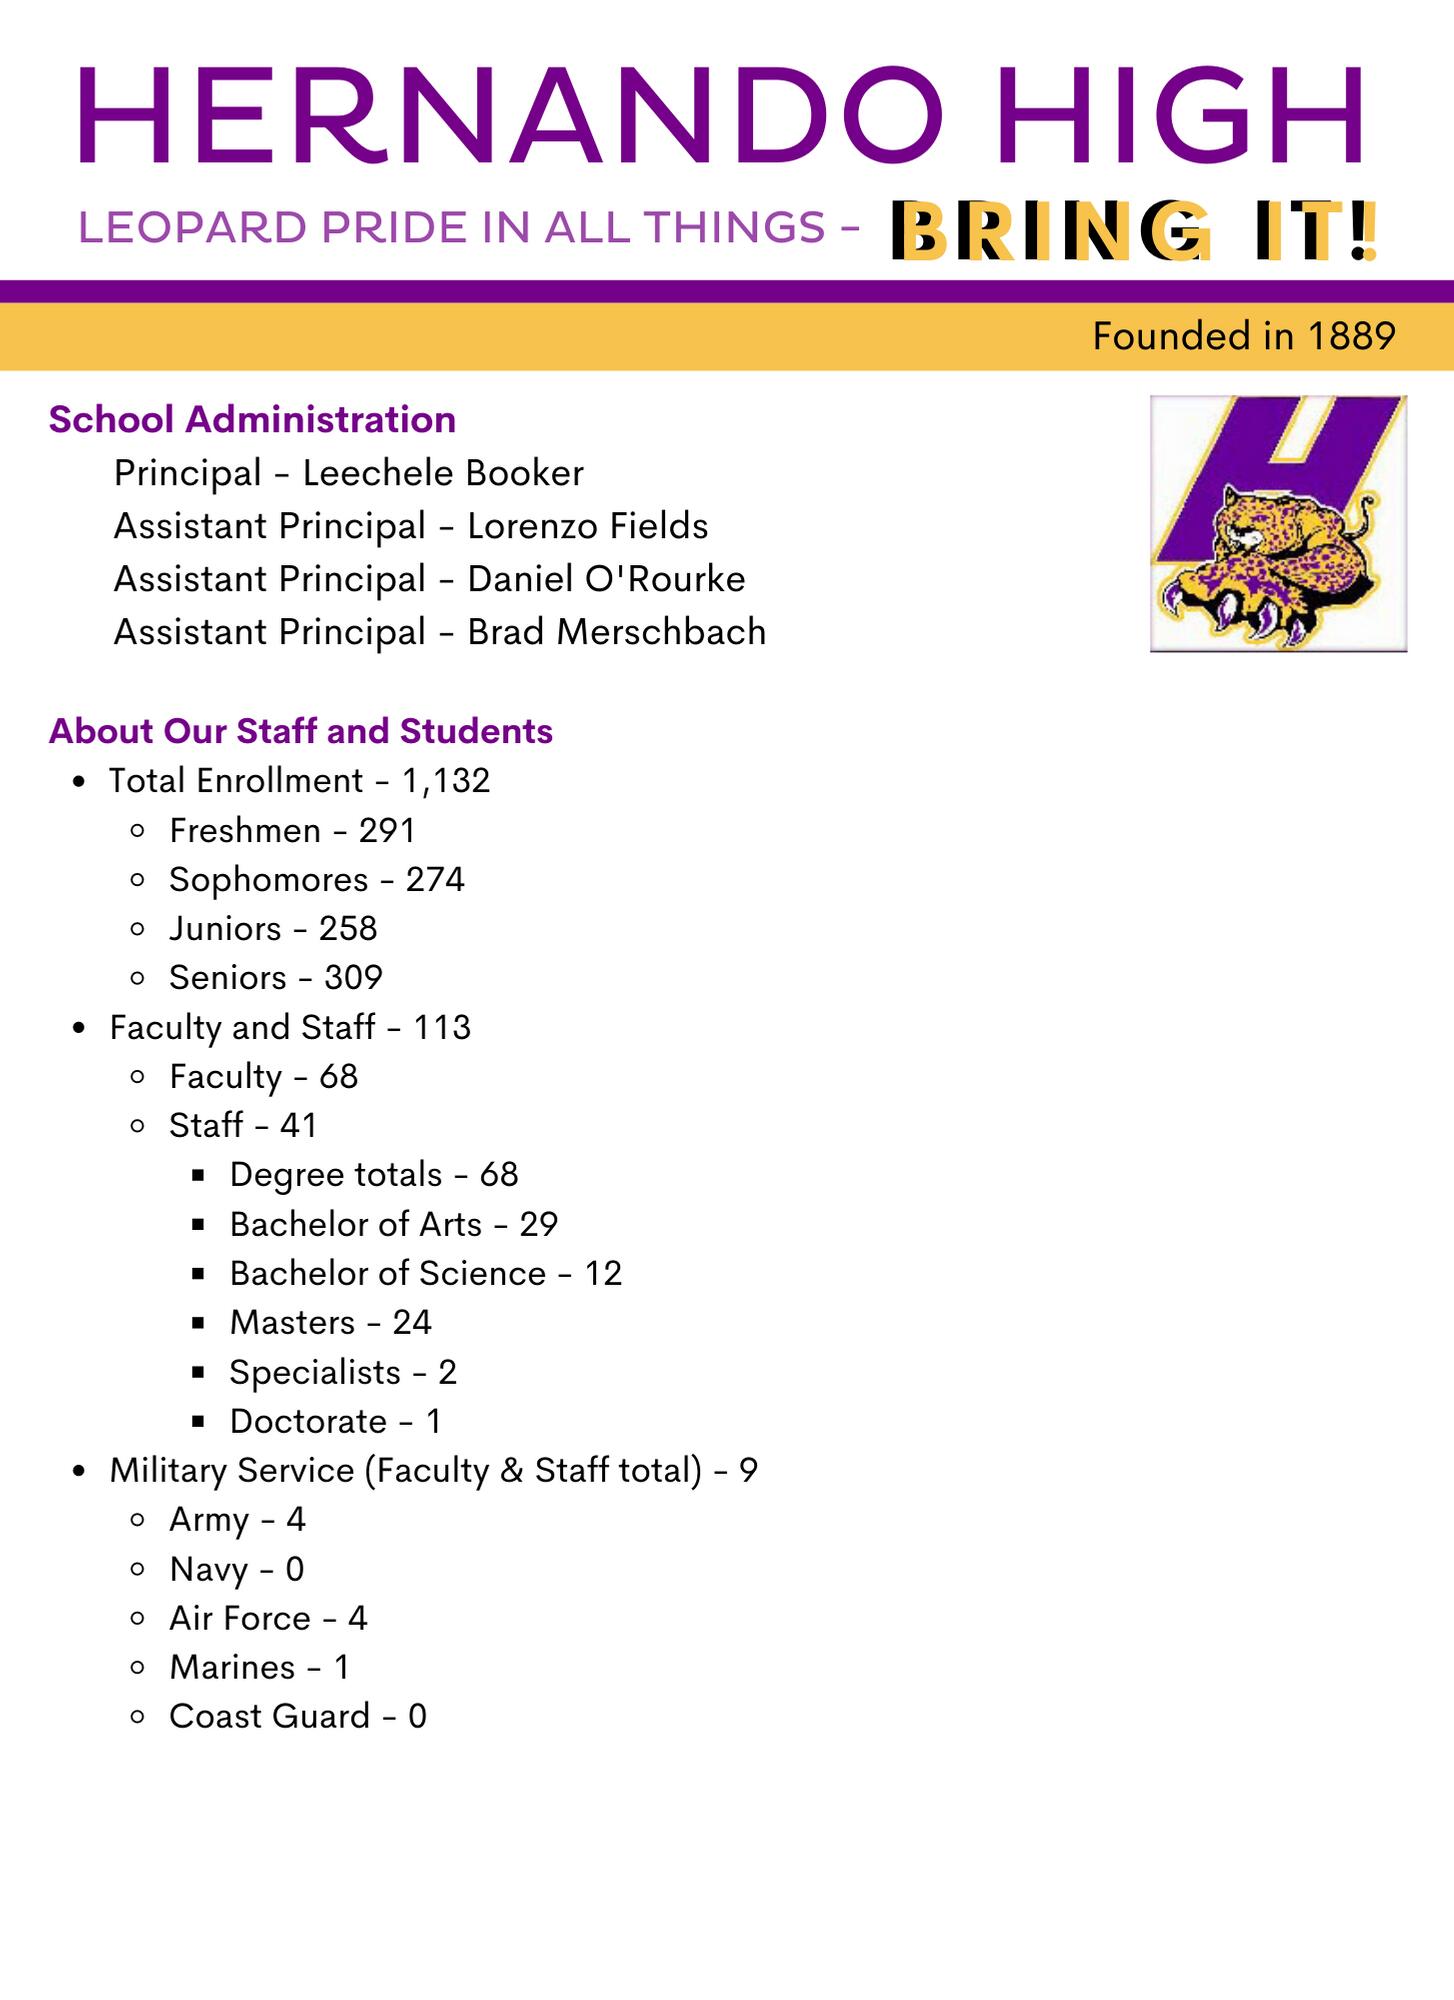 HHS Fact Sheet